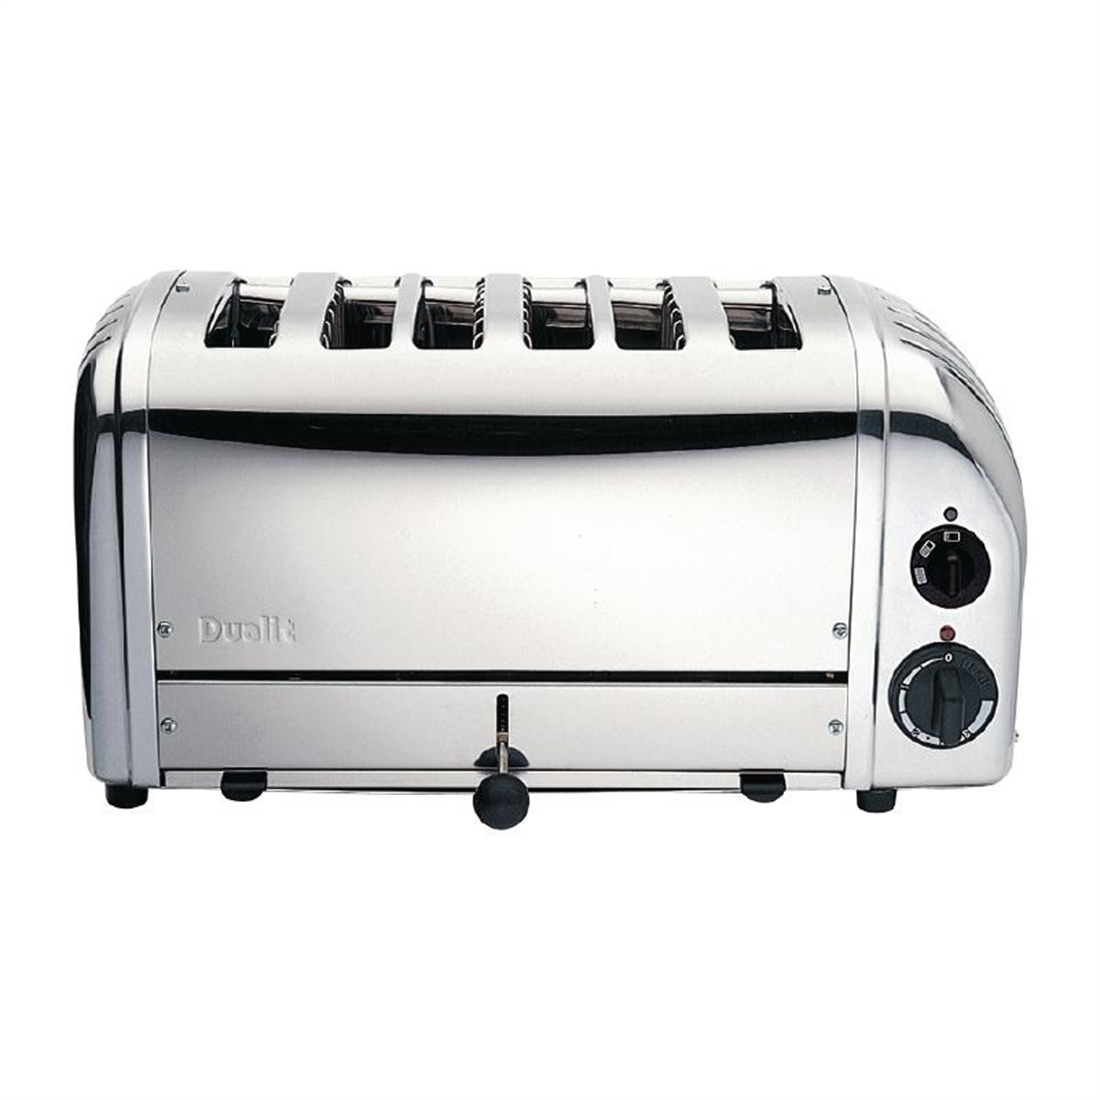 Dualit 4 Slice Vario Toaster Metallic Silver 40349 Stainless Steel Aluminium 